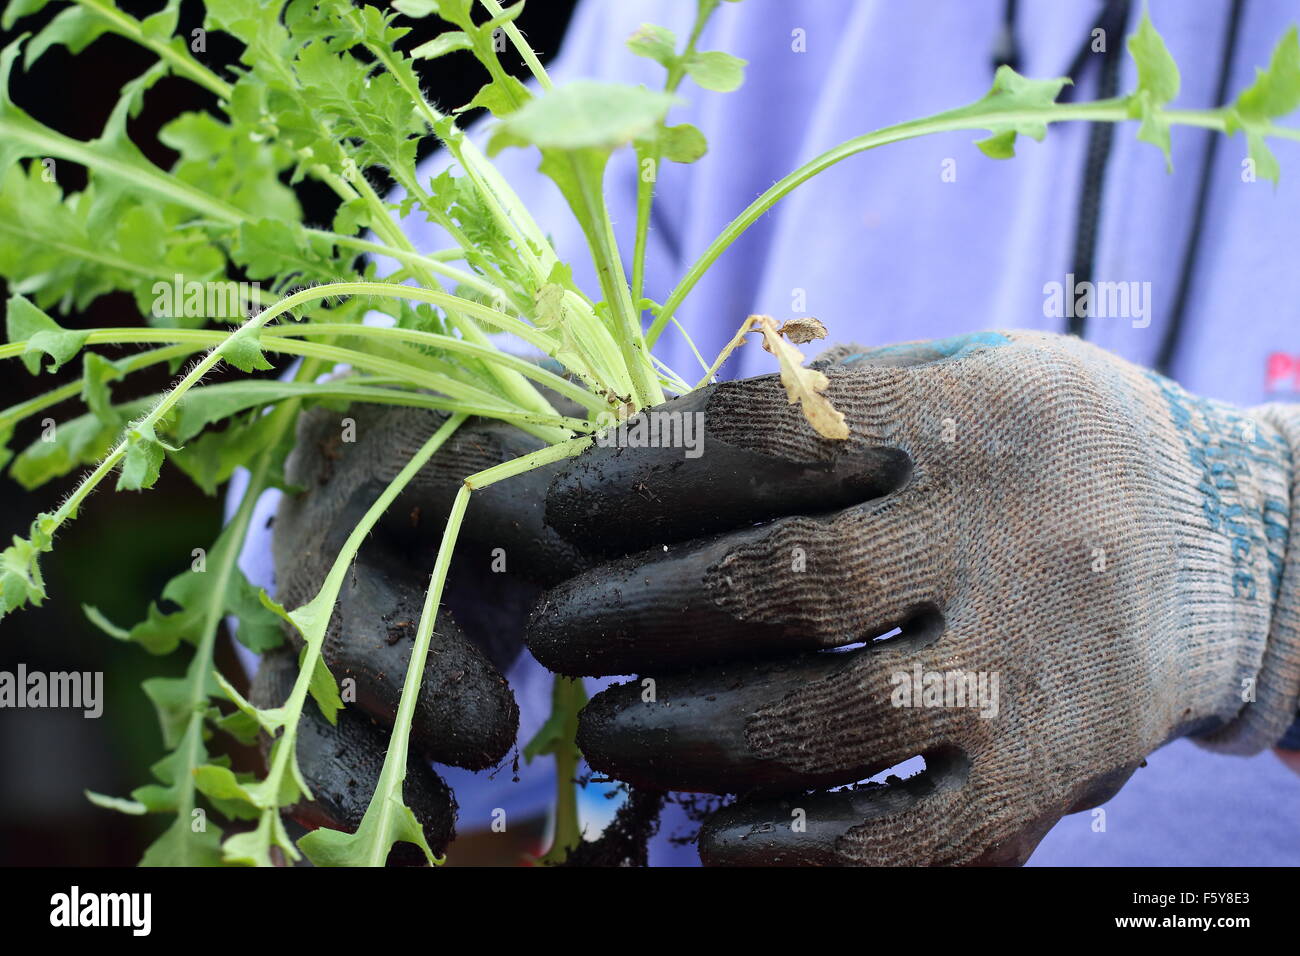 Mâle adulte hand holding Flanders Poppy les semis avant de les transférer dans le sol Banque D'Images